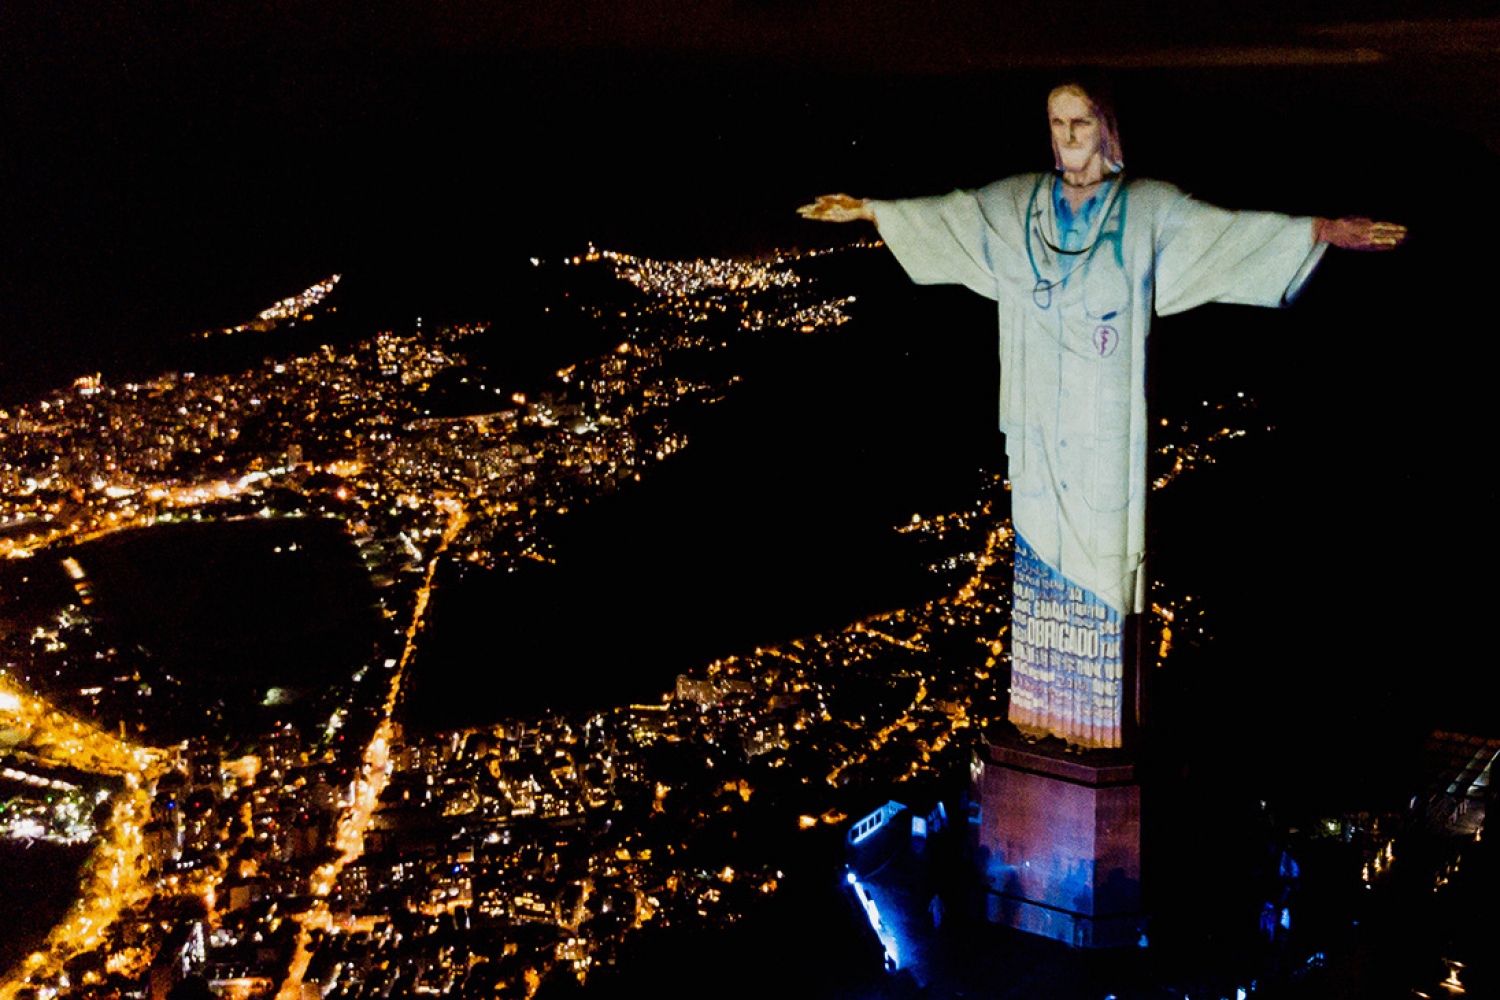 Статую Христа в Рио «одели» в халат врача